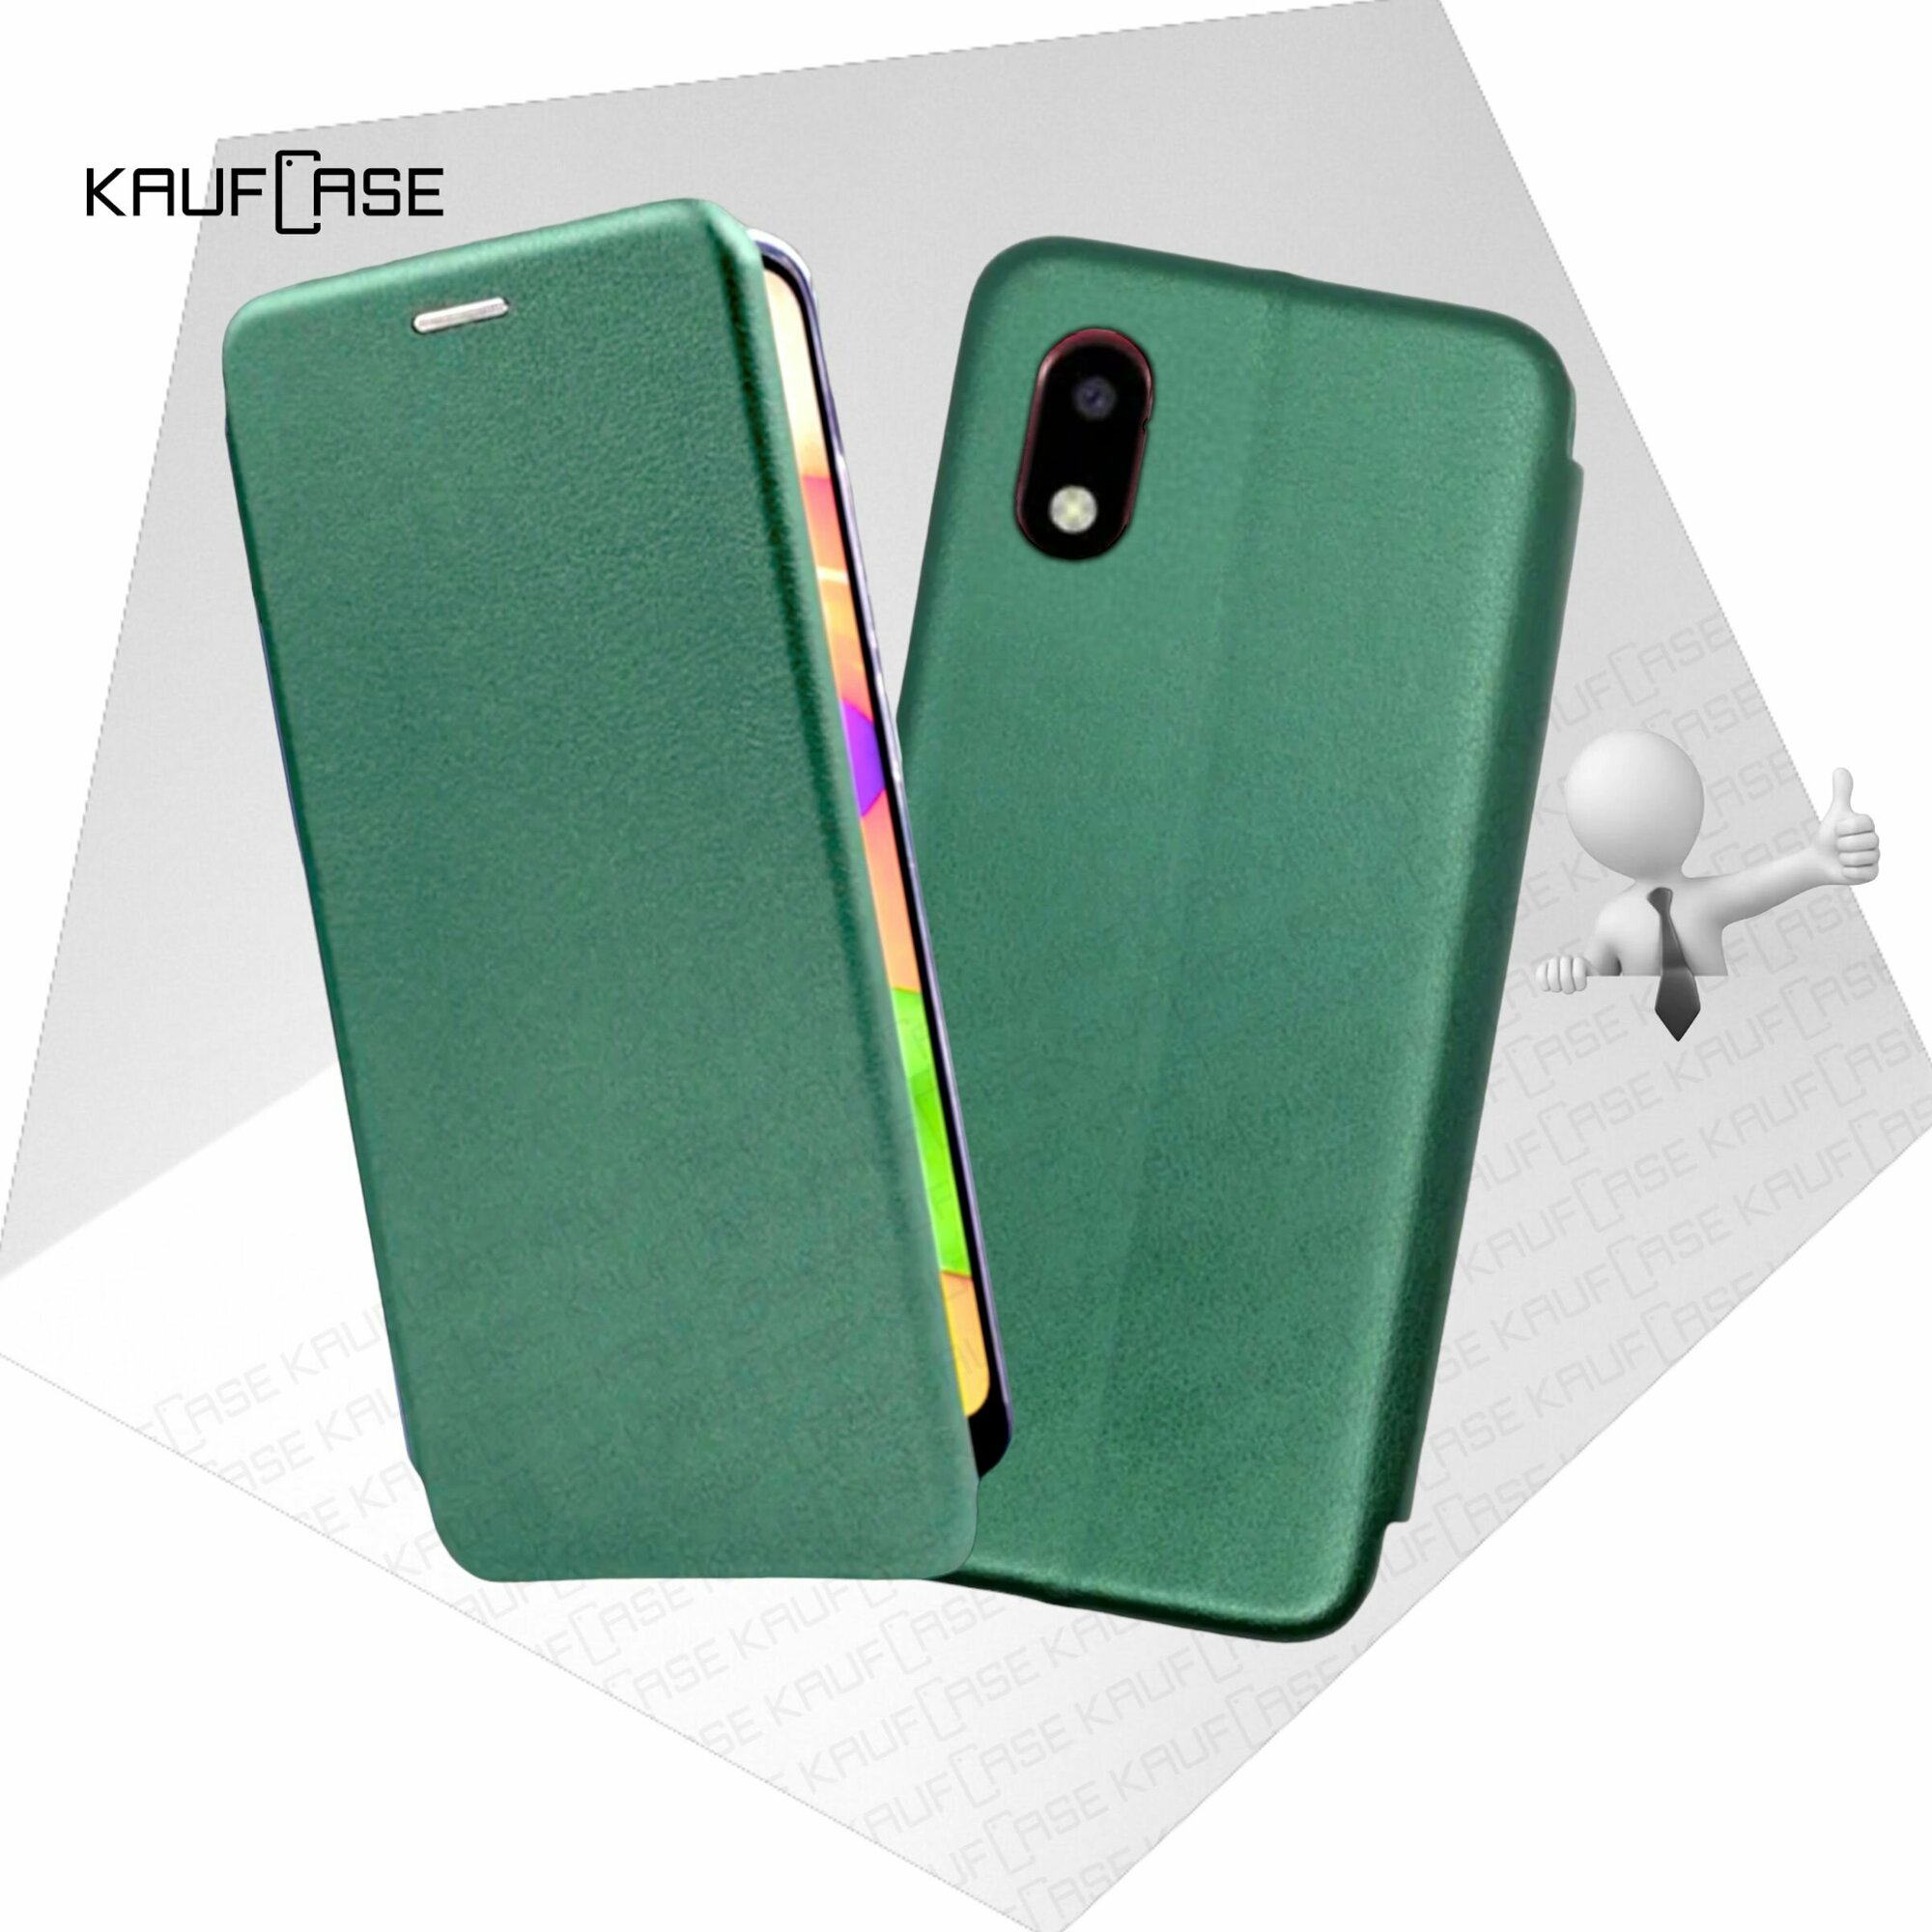 Чехол книжка KaufCase для телефона Huawei Honor 8S /Y5 2019 (5.71"), темно-зеленый. Трансфомер